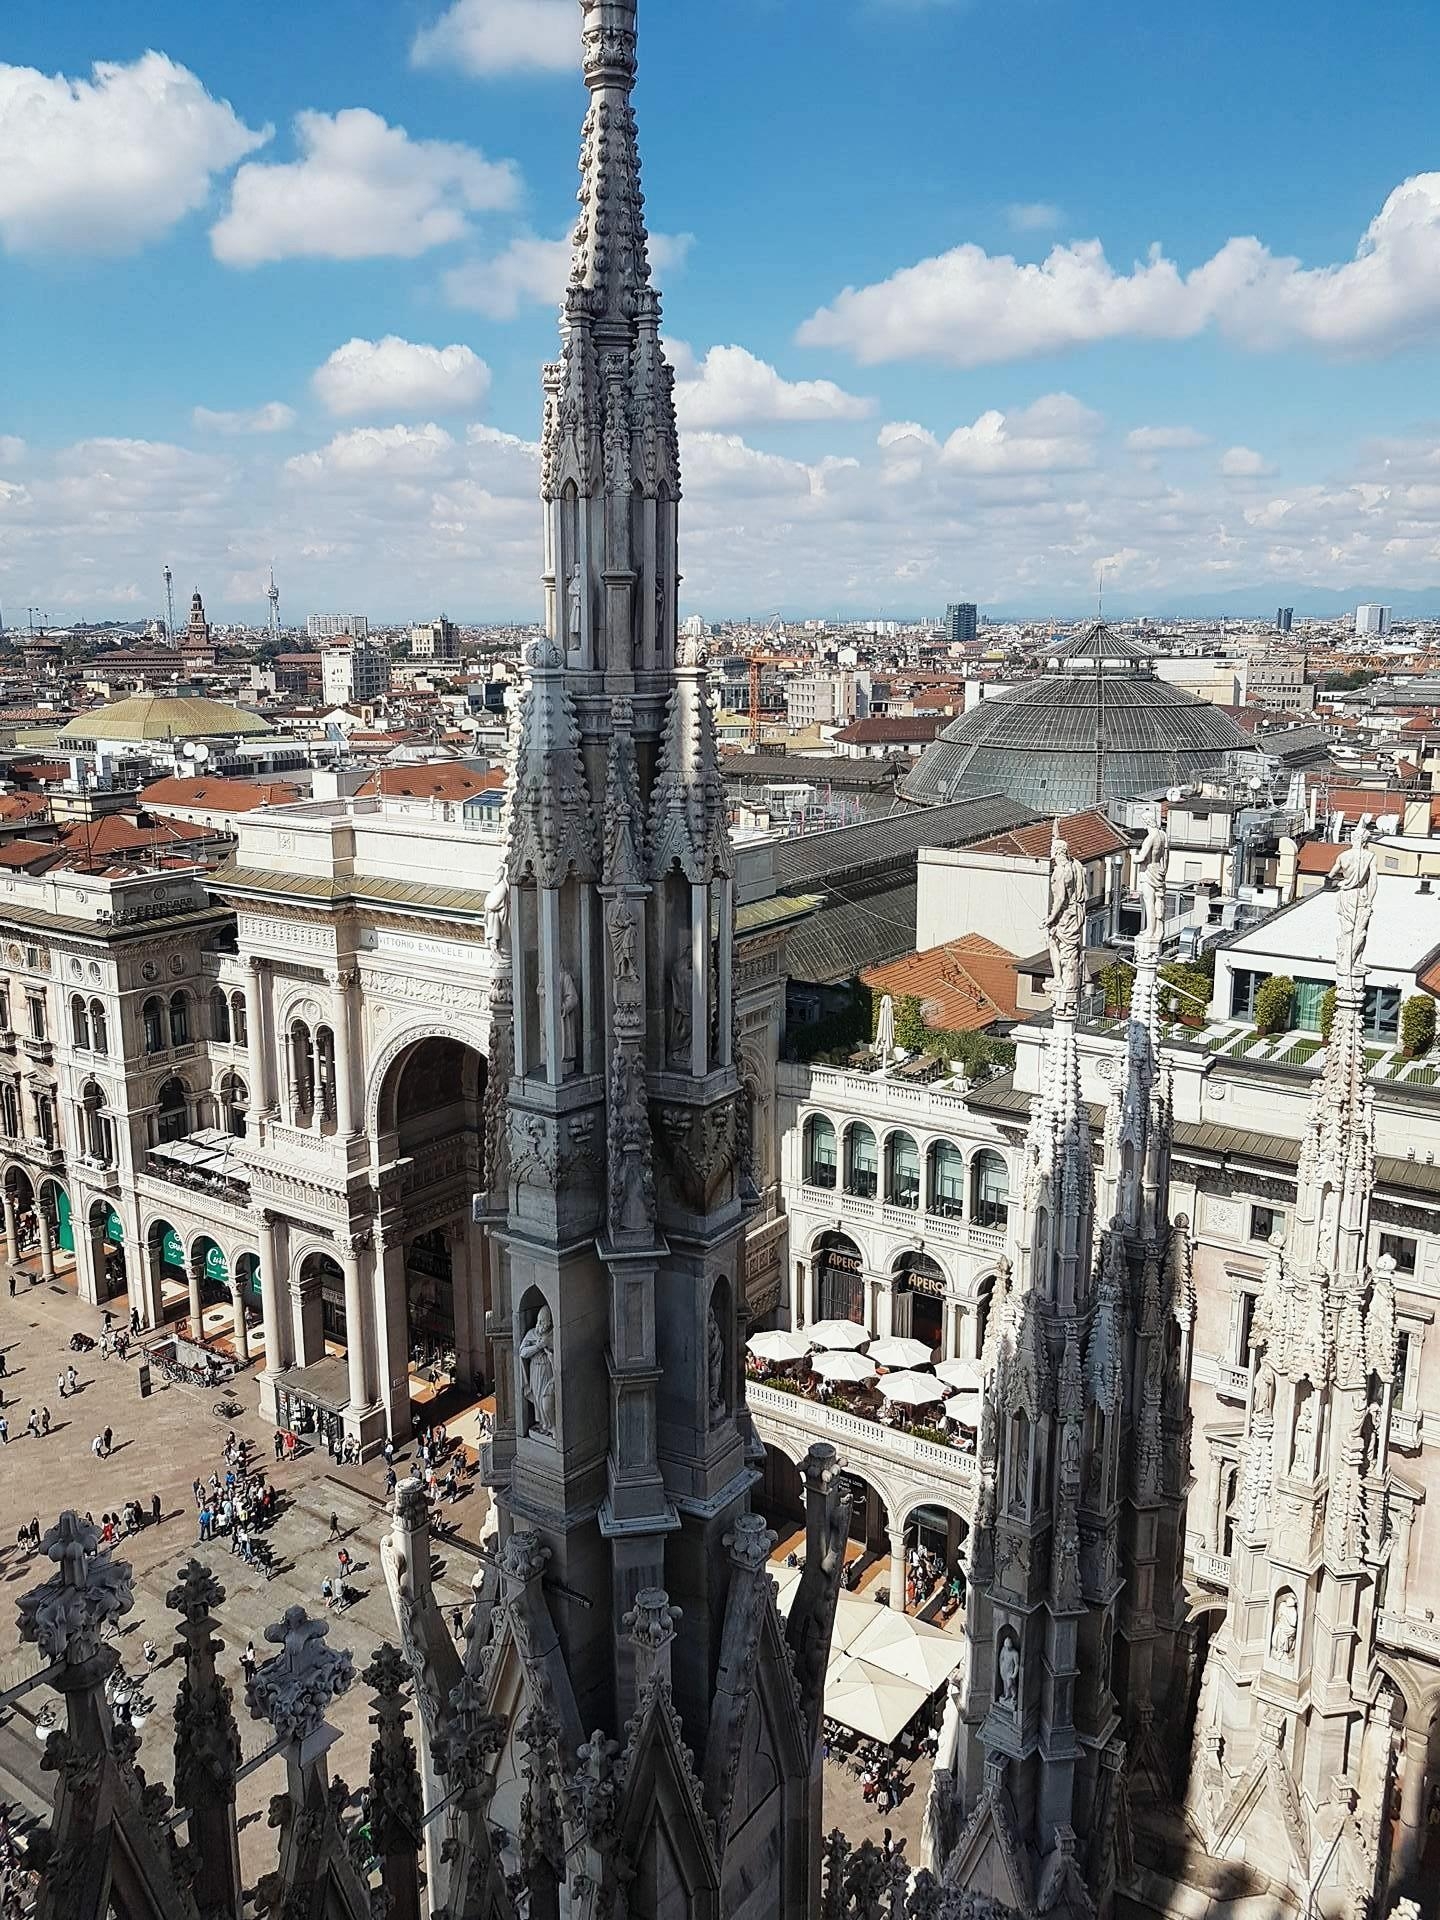 Auf dem Dom über den Dächern von #Mailand 🕍☀️
#Urlaub #reise #travel #city #städtetrip